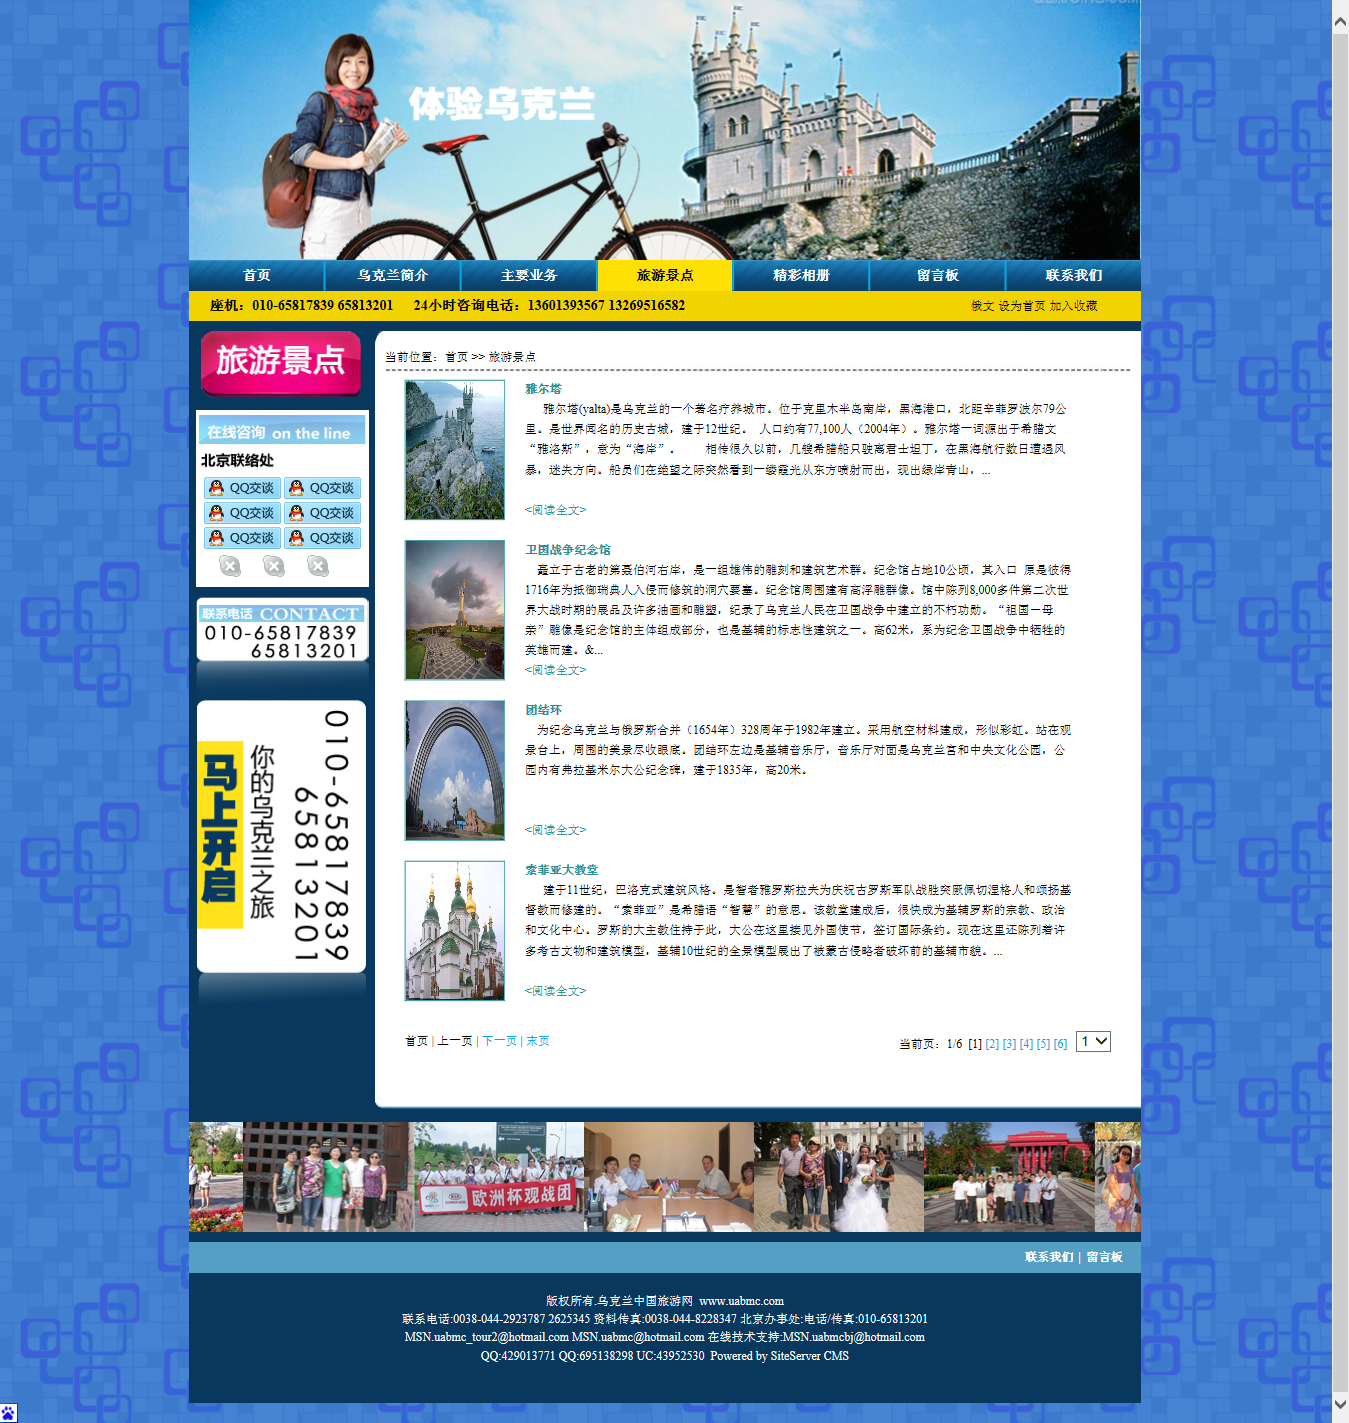 乌克兰中国旅游公司 旅游景点